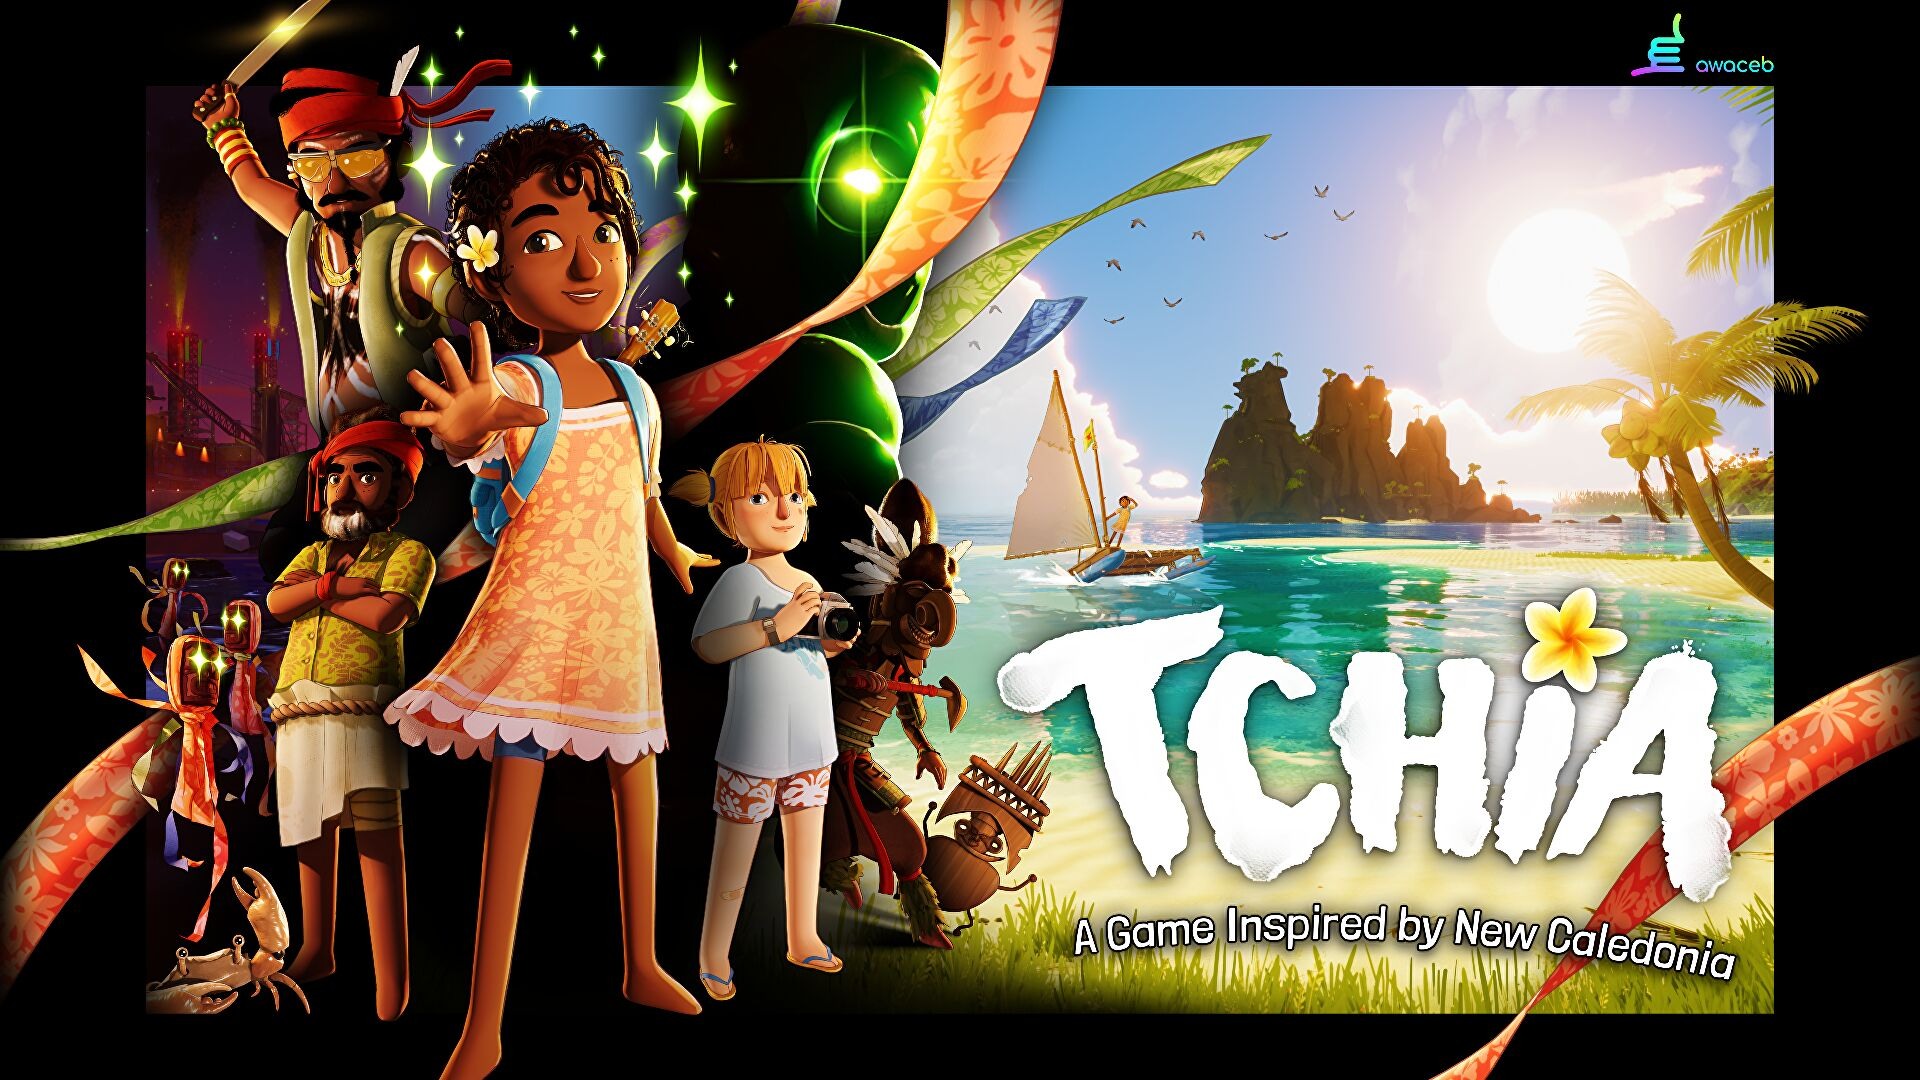 开放世界沙盒冒险游戏《奇芽 Tchia》确定 3/21 推出 首日加入 PS+ 游戏目录插图